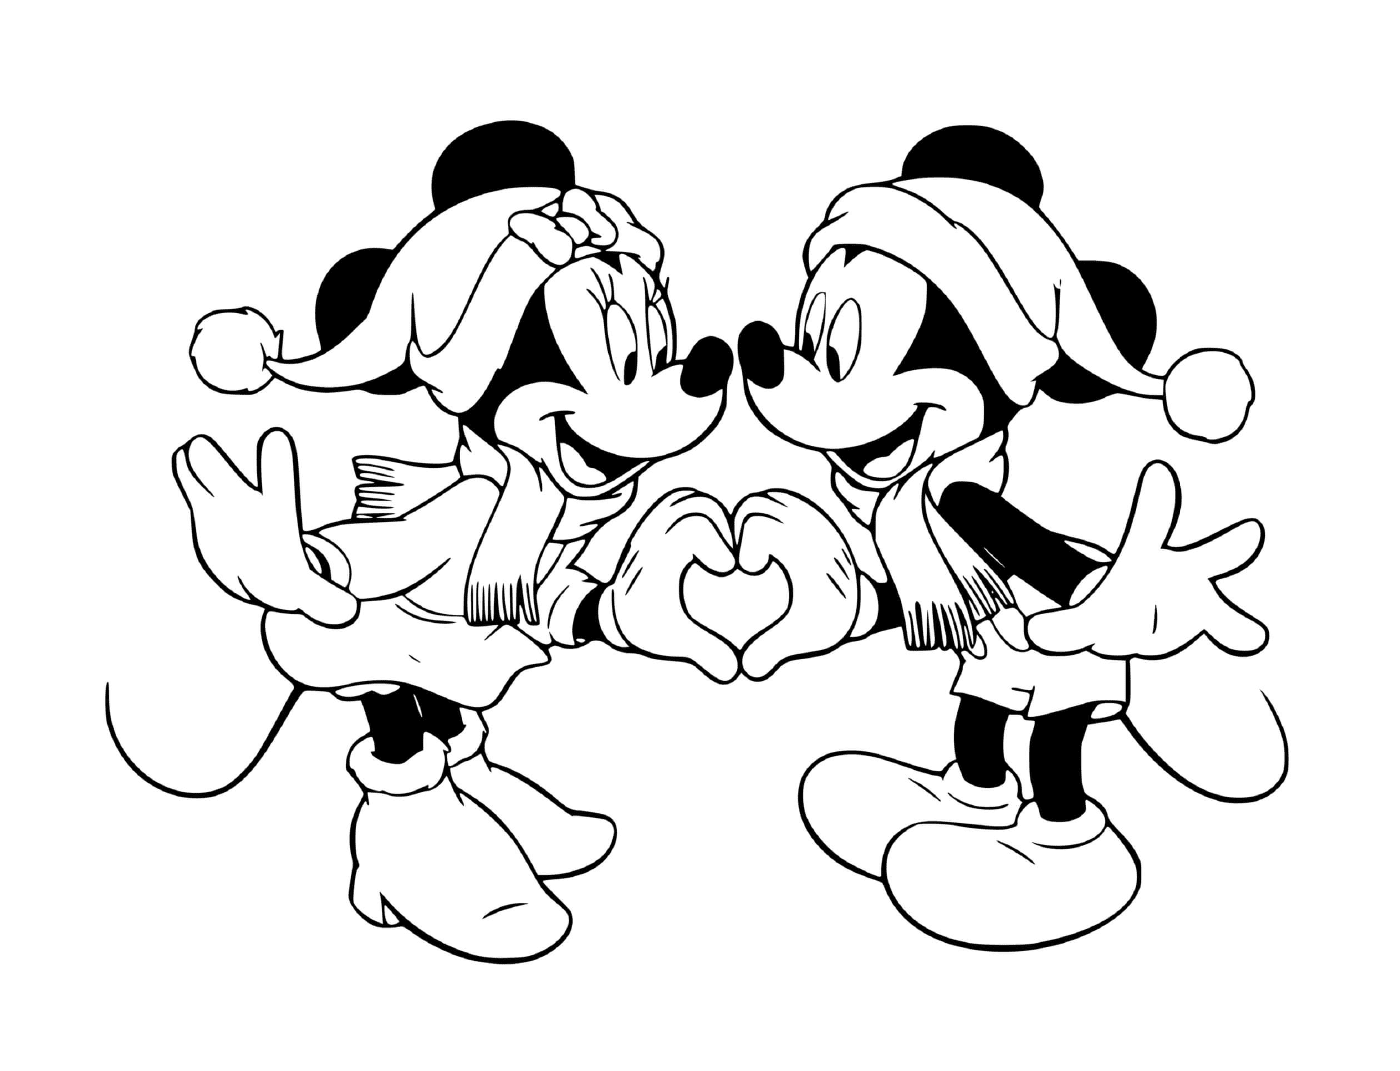  Mickey und Minnie bilden ein Herz 